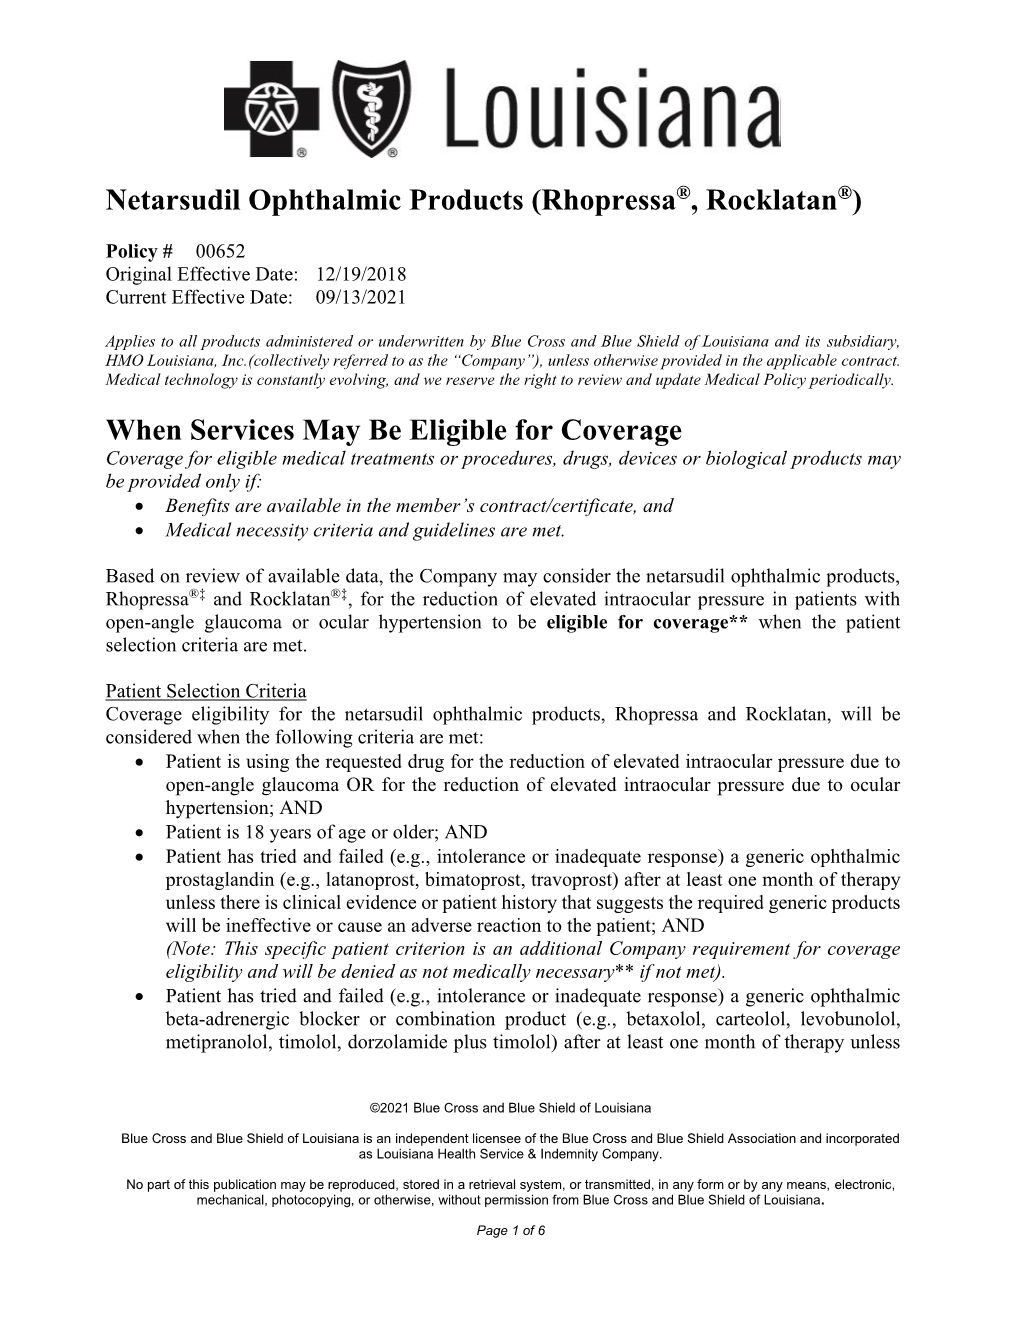 00652 Netarsudil Ophthalmic Products (Rhopressa, Rocklatan)